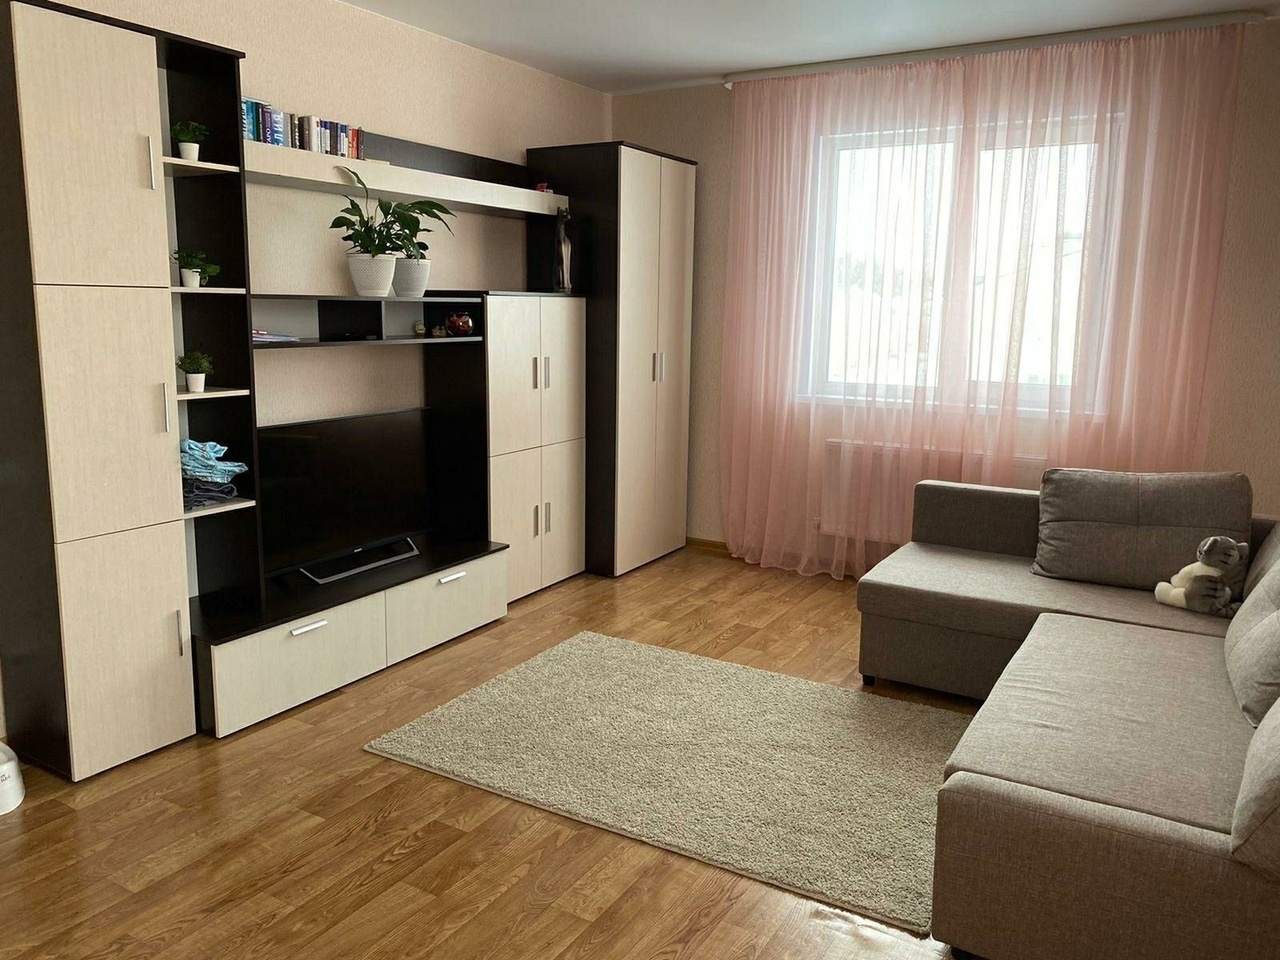 Снять однокомнатную квартиру без мебели в бресте